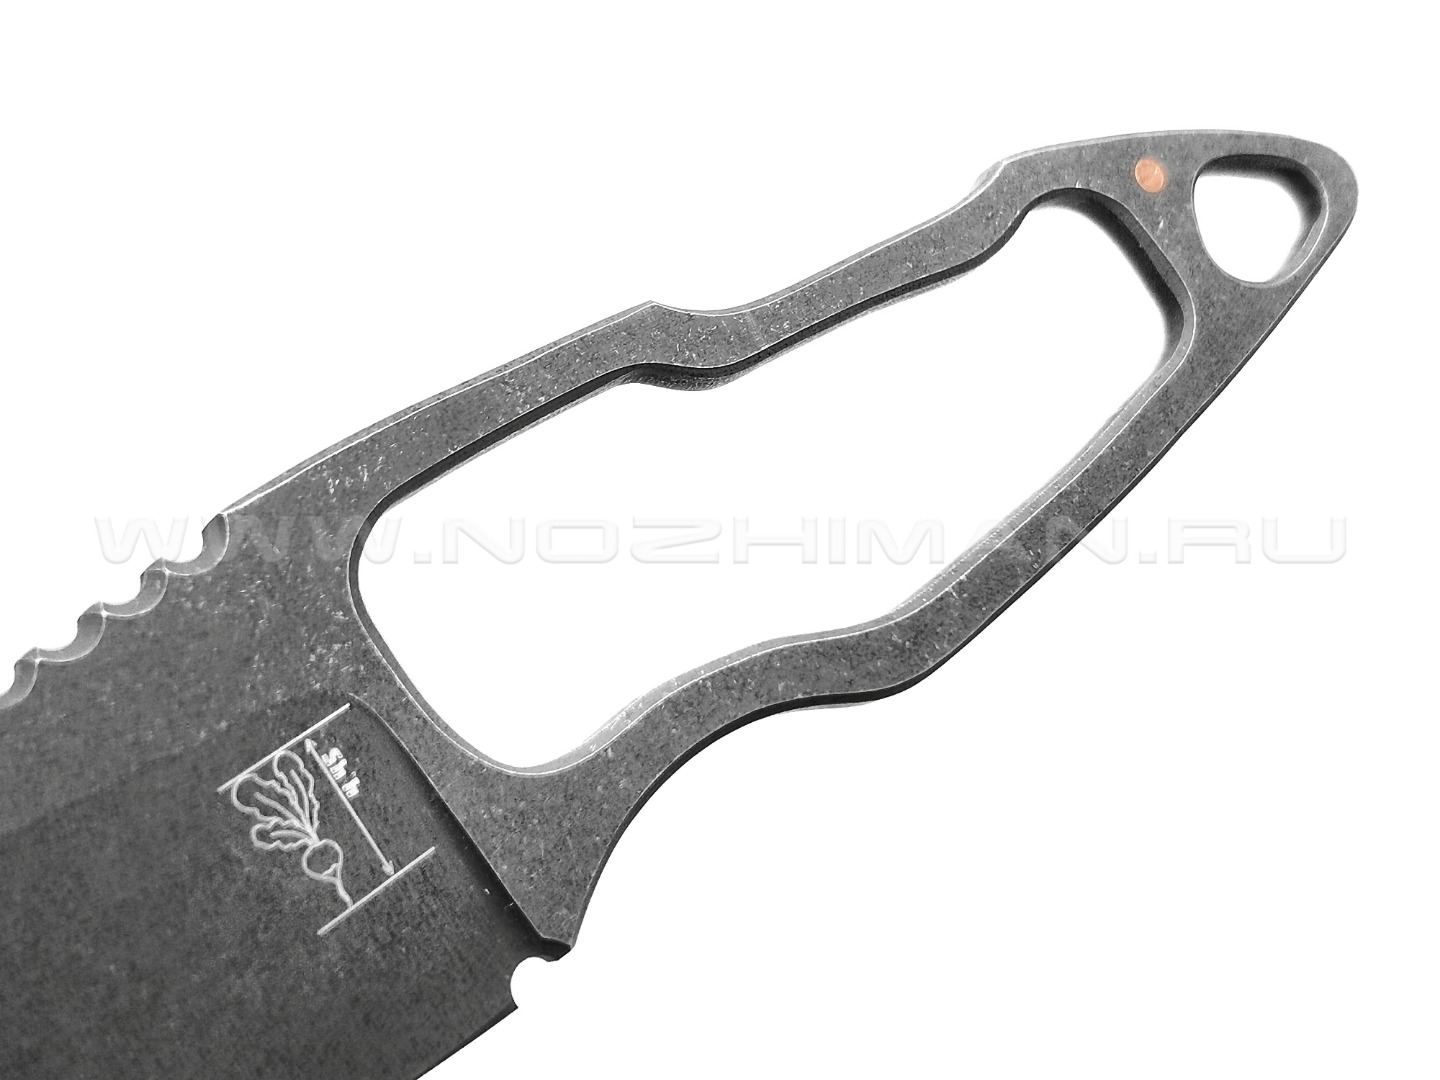 1-й Цех нож "Вершок" сталь 440C, рукоять сталь